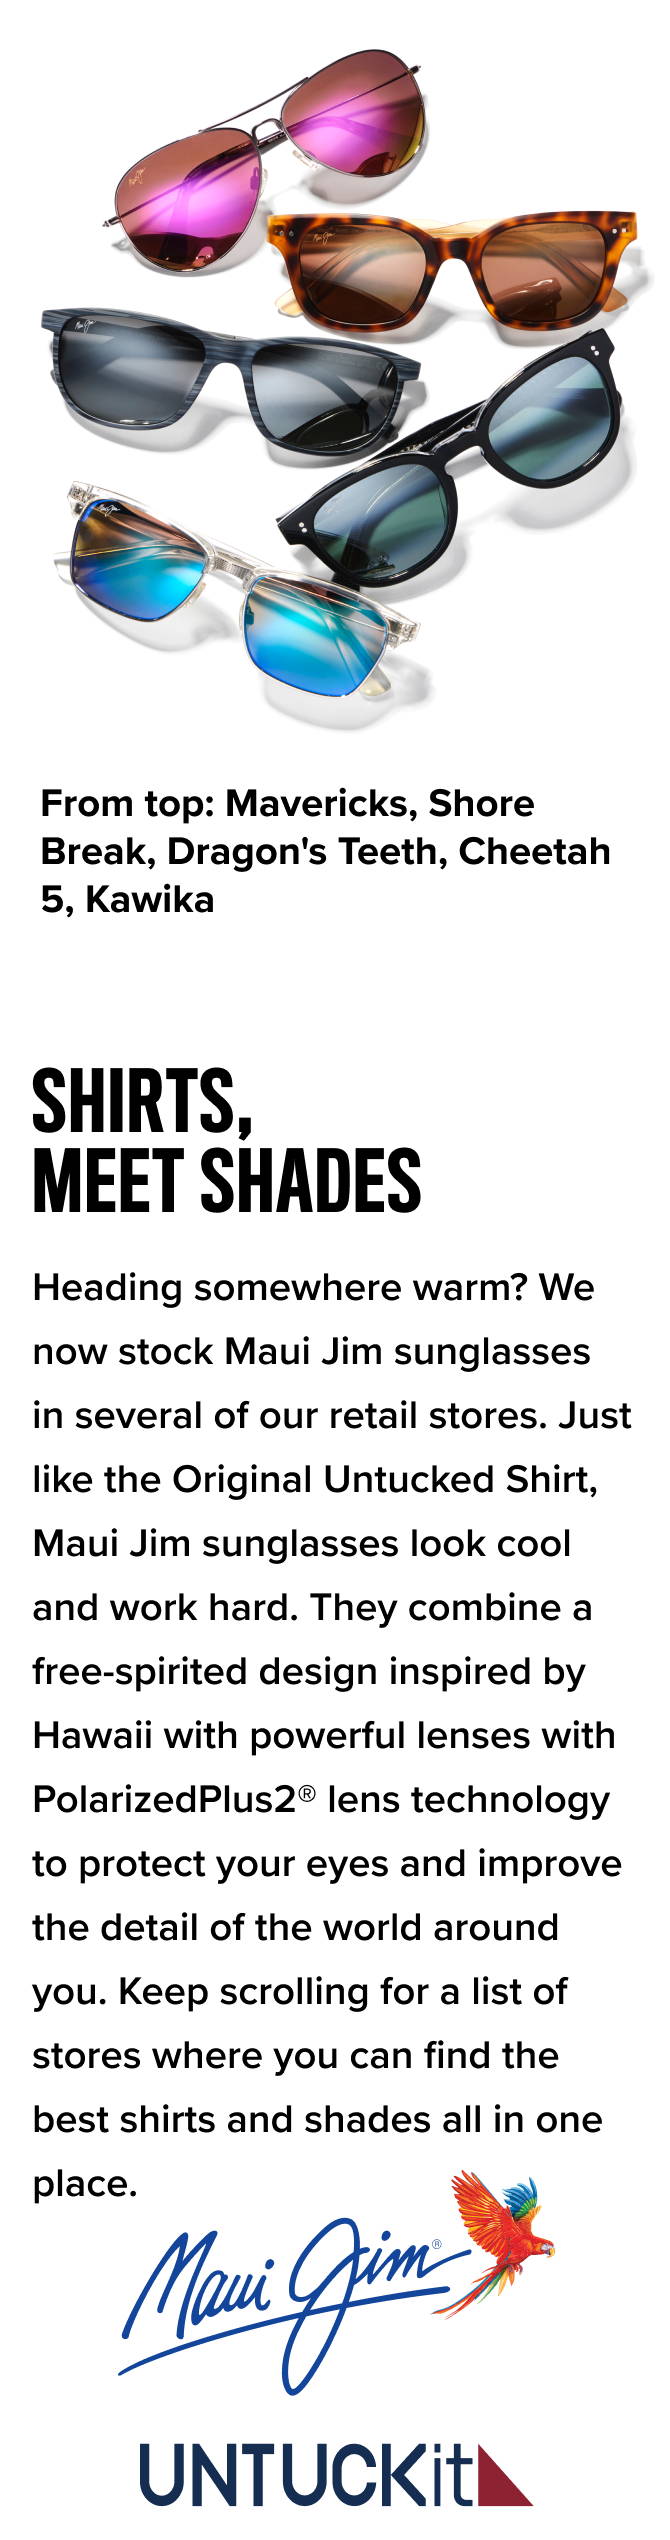 Shirts, Meet Shades — Products from top: Mavericks, Shore Break, Dragon's Teeth, Cheetah 5, Kawika